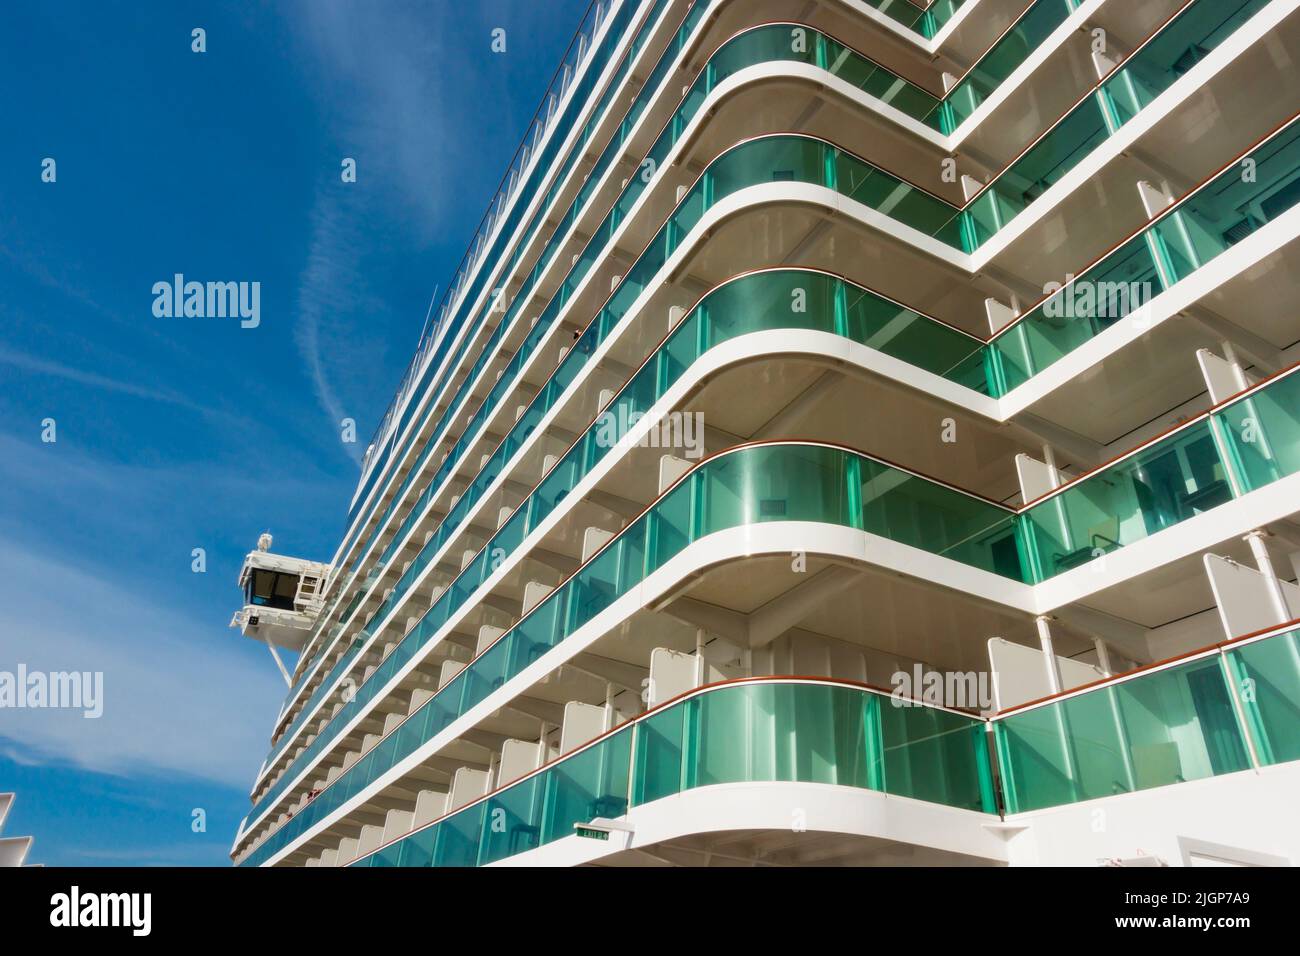 Balkonkabinen auf dem P & O MS Iona-Schiff. Grünes Glas und weißer Überbau. Stockfoto